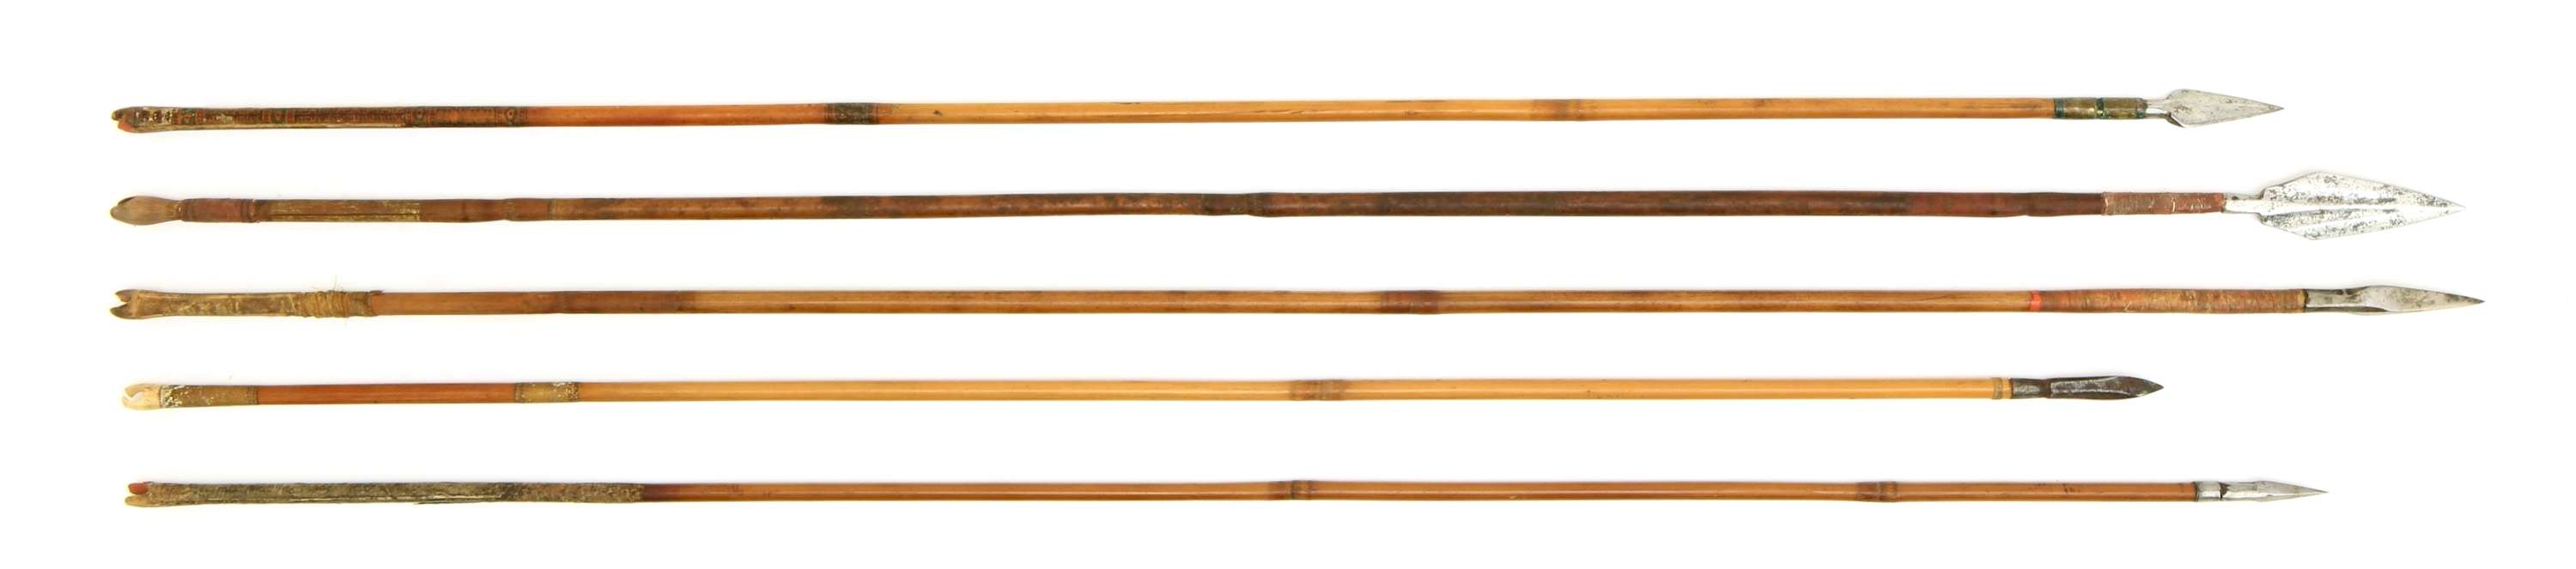 Indian arrows